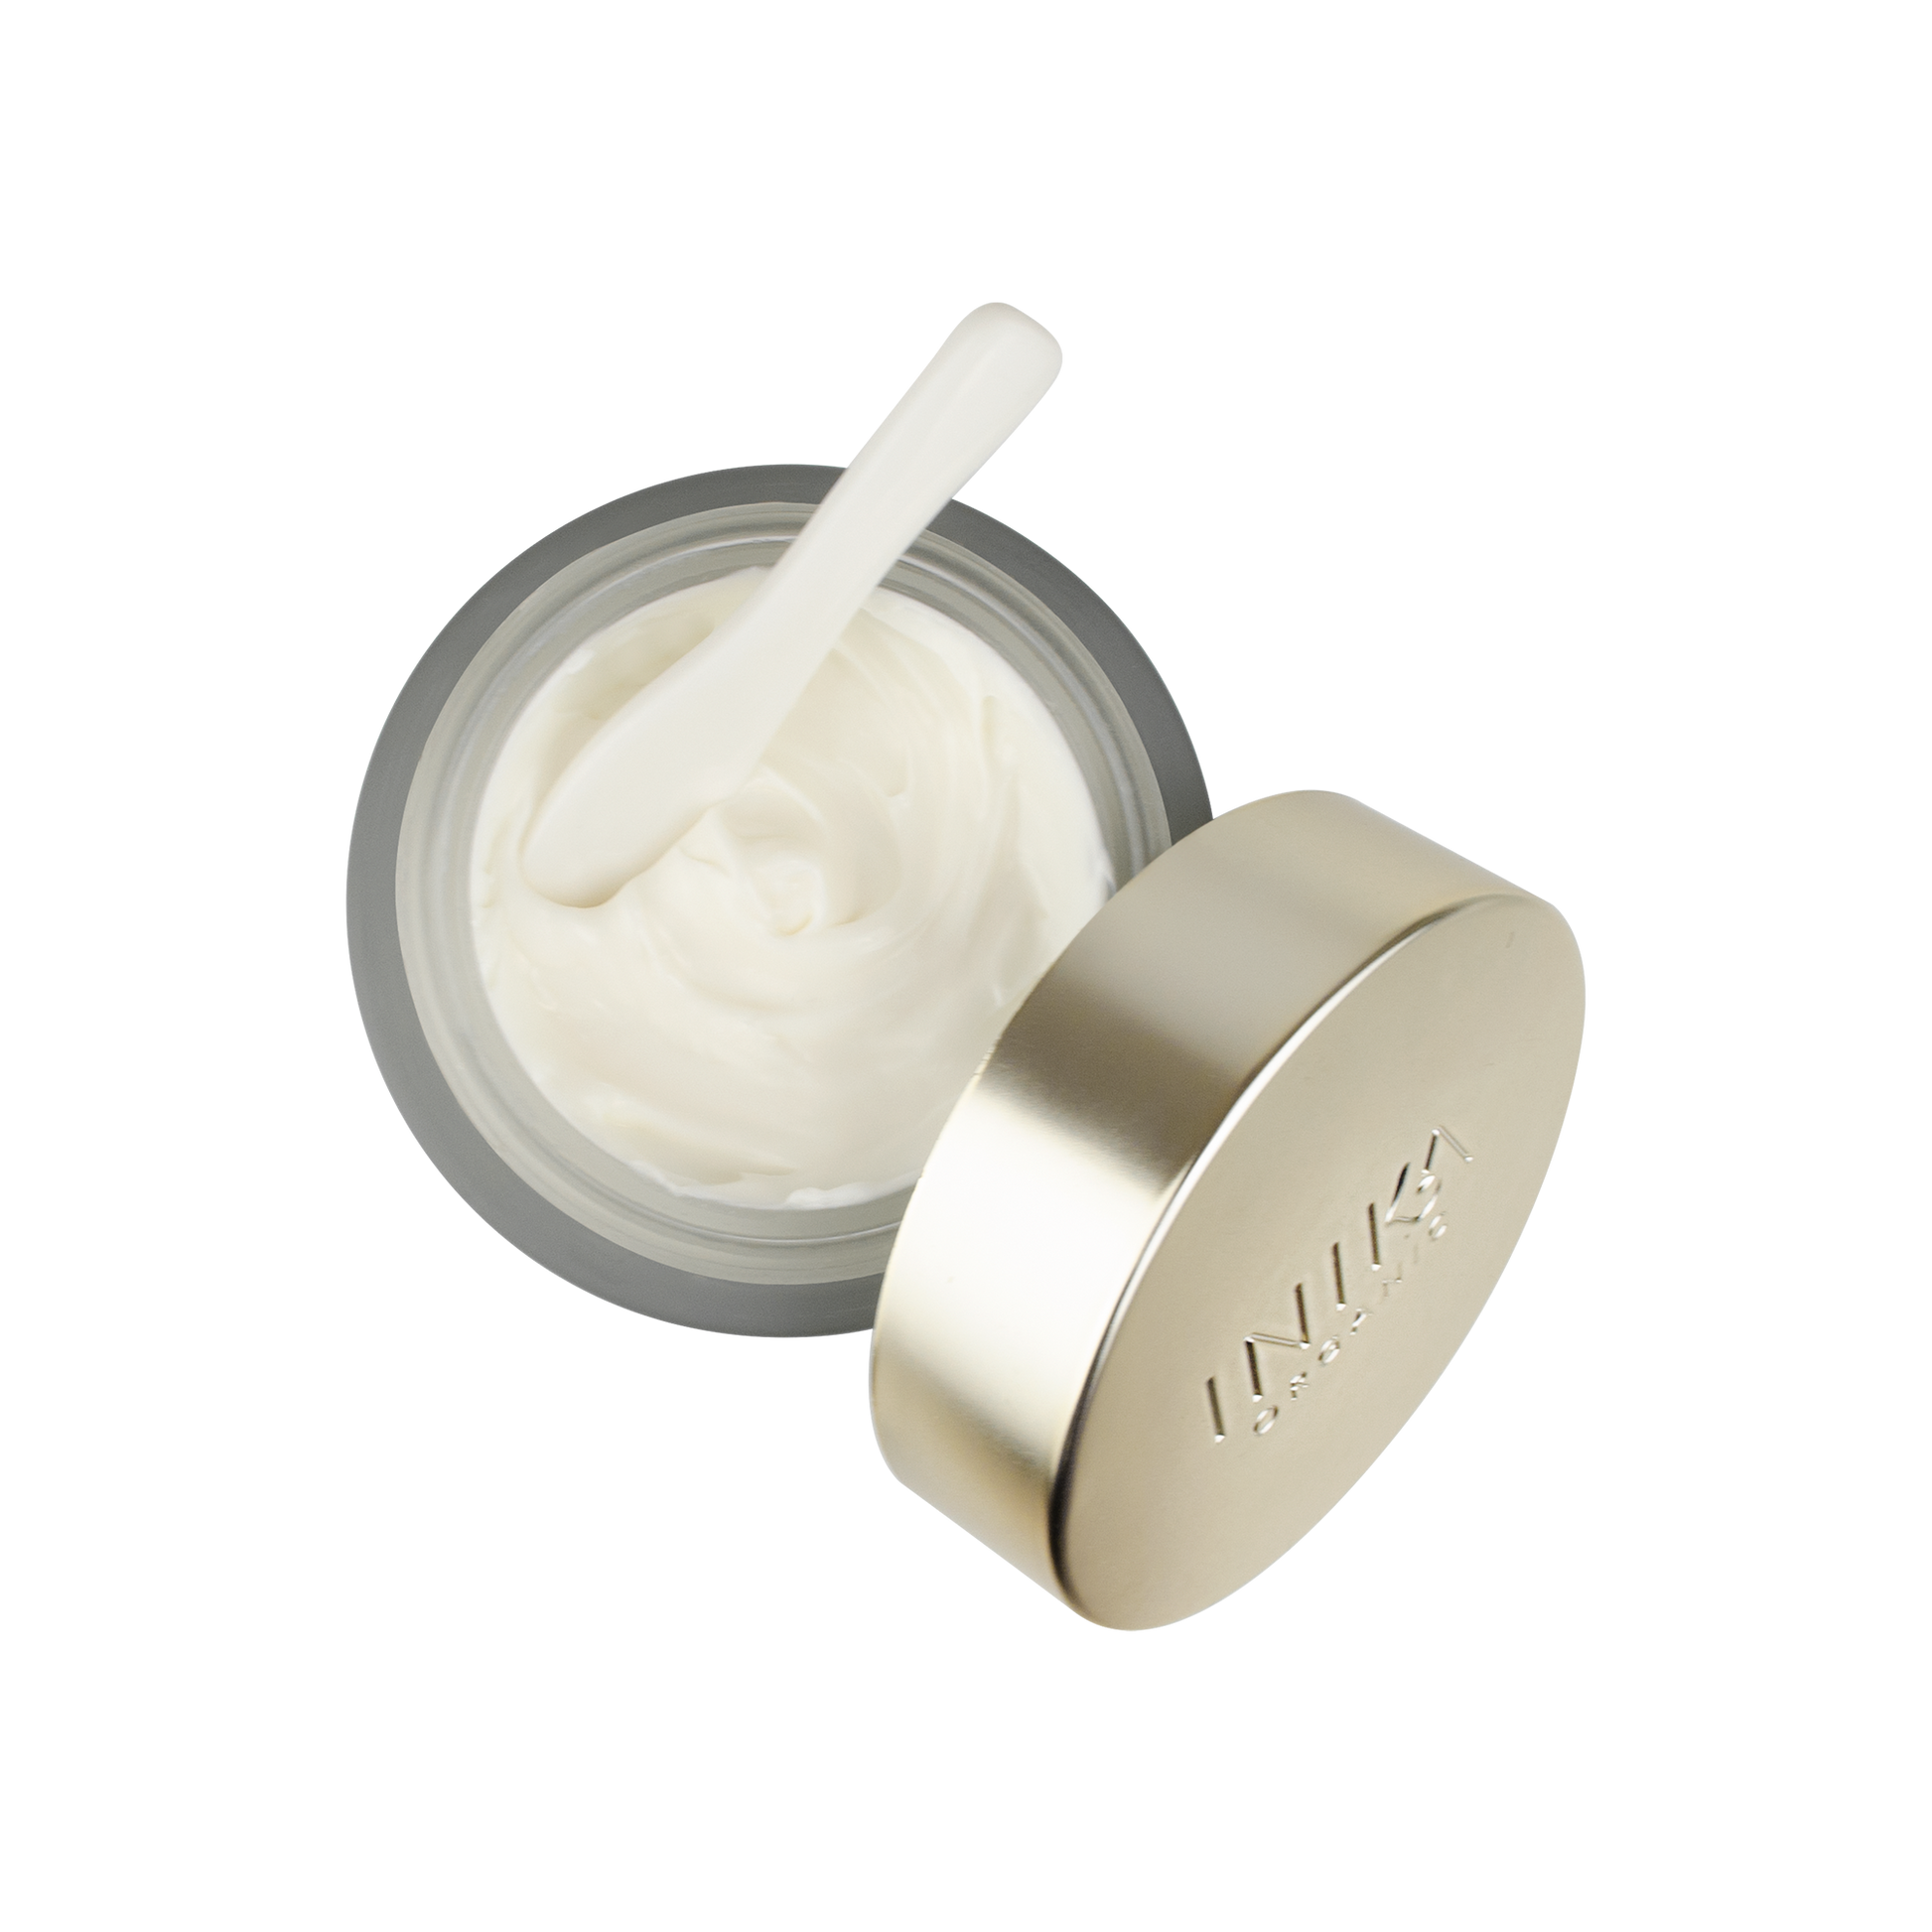 Phytofuse Renew Resveratrol Night Cream 50ml | INIKA Organic